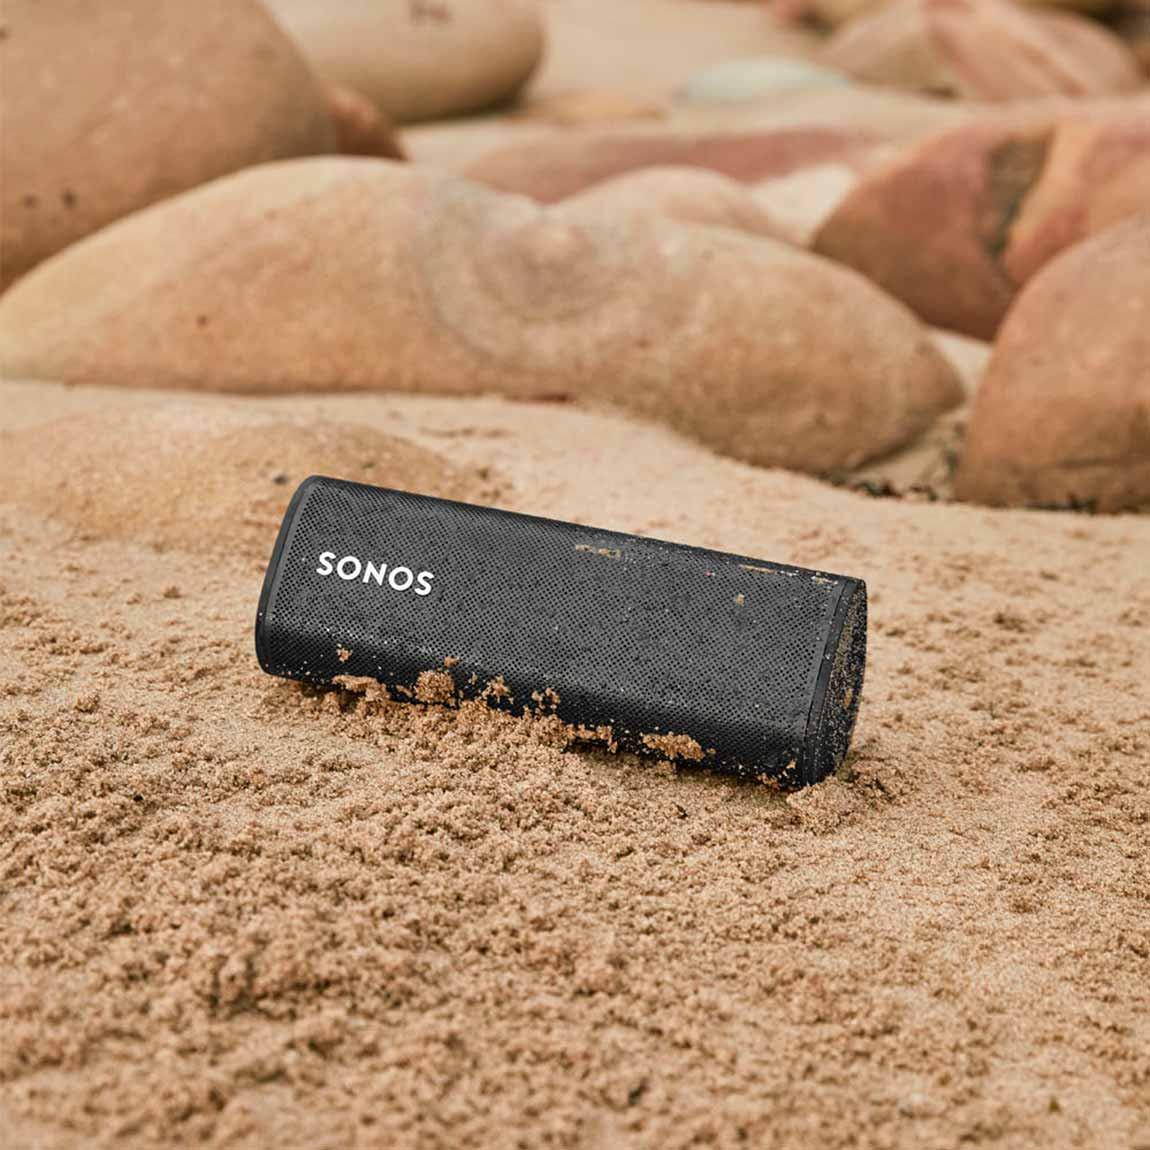 Sonos Roam - mobiler wasserdichter Smart Speaker am Strand im feuchten Sand